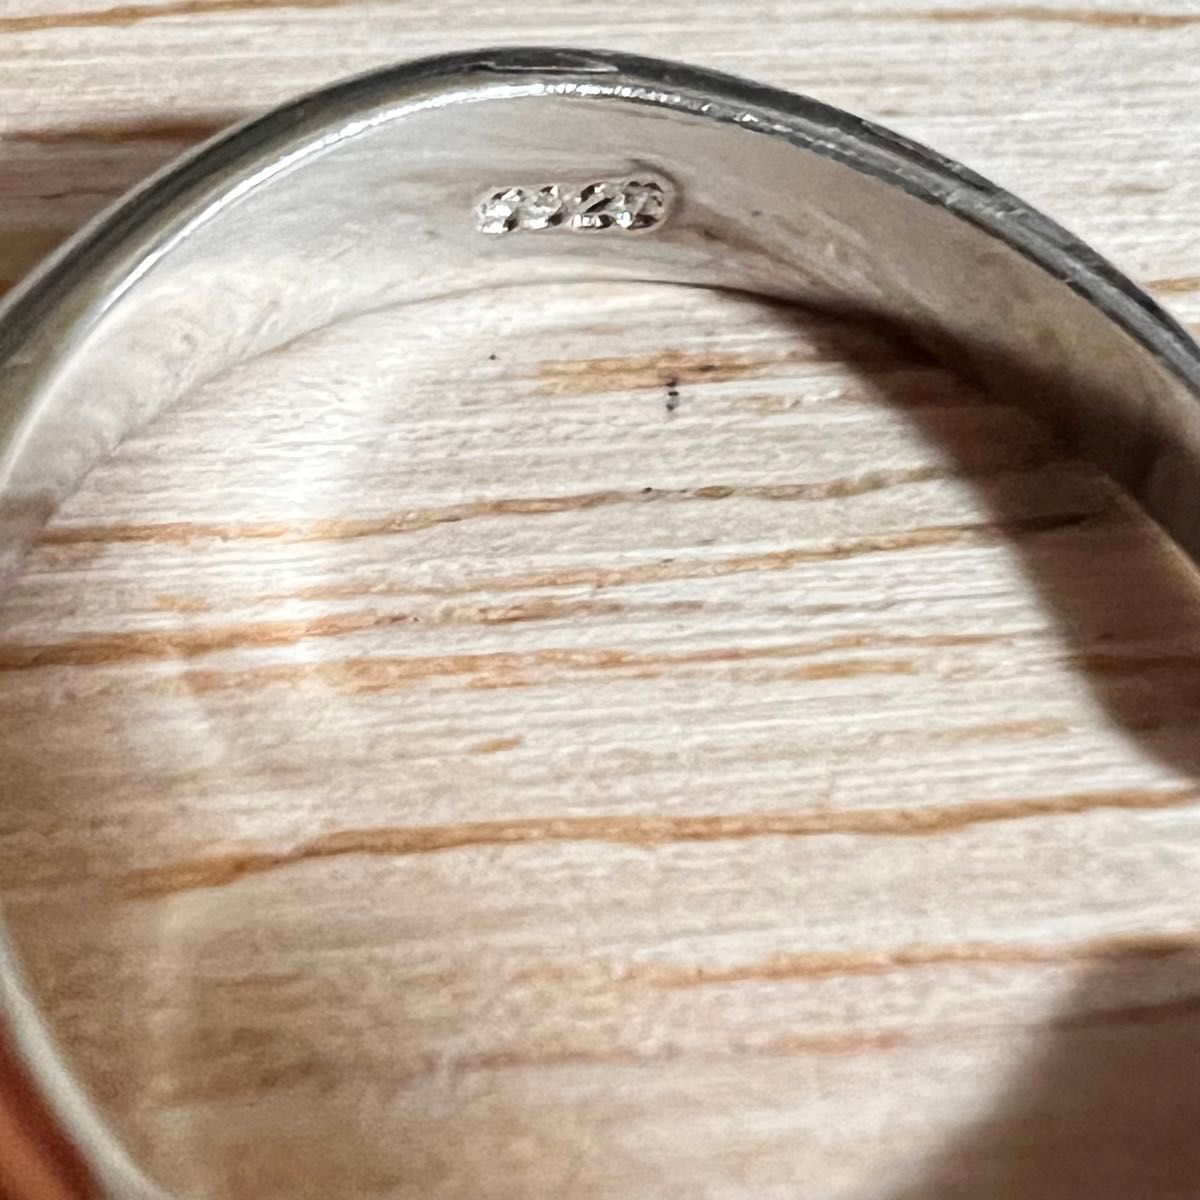 シルバーリング 925 スレンダー スムース 幅細 華奢 ミニマム 韓国 指輪